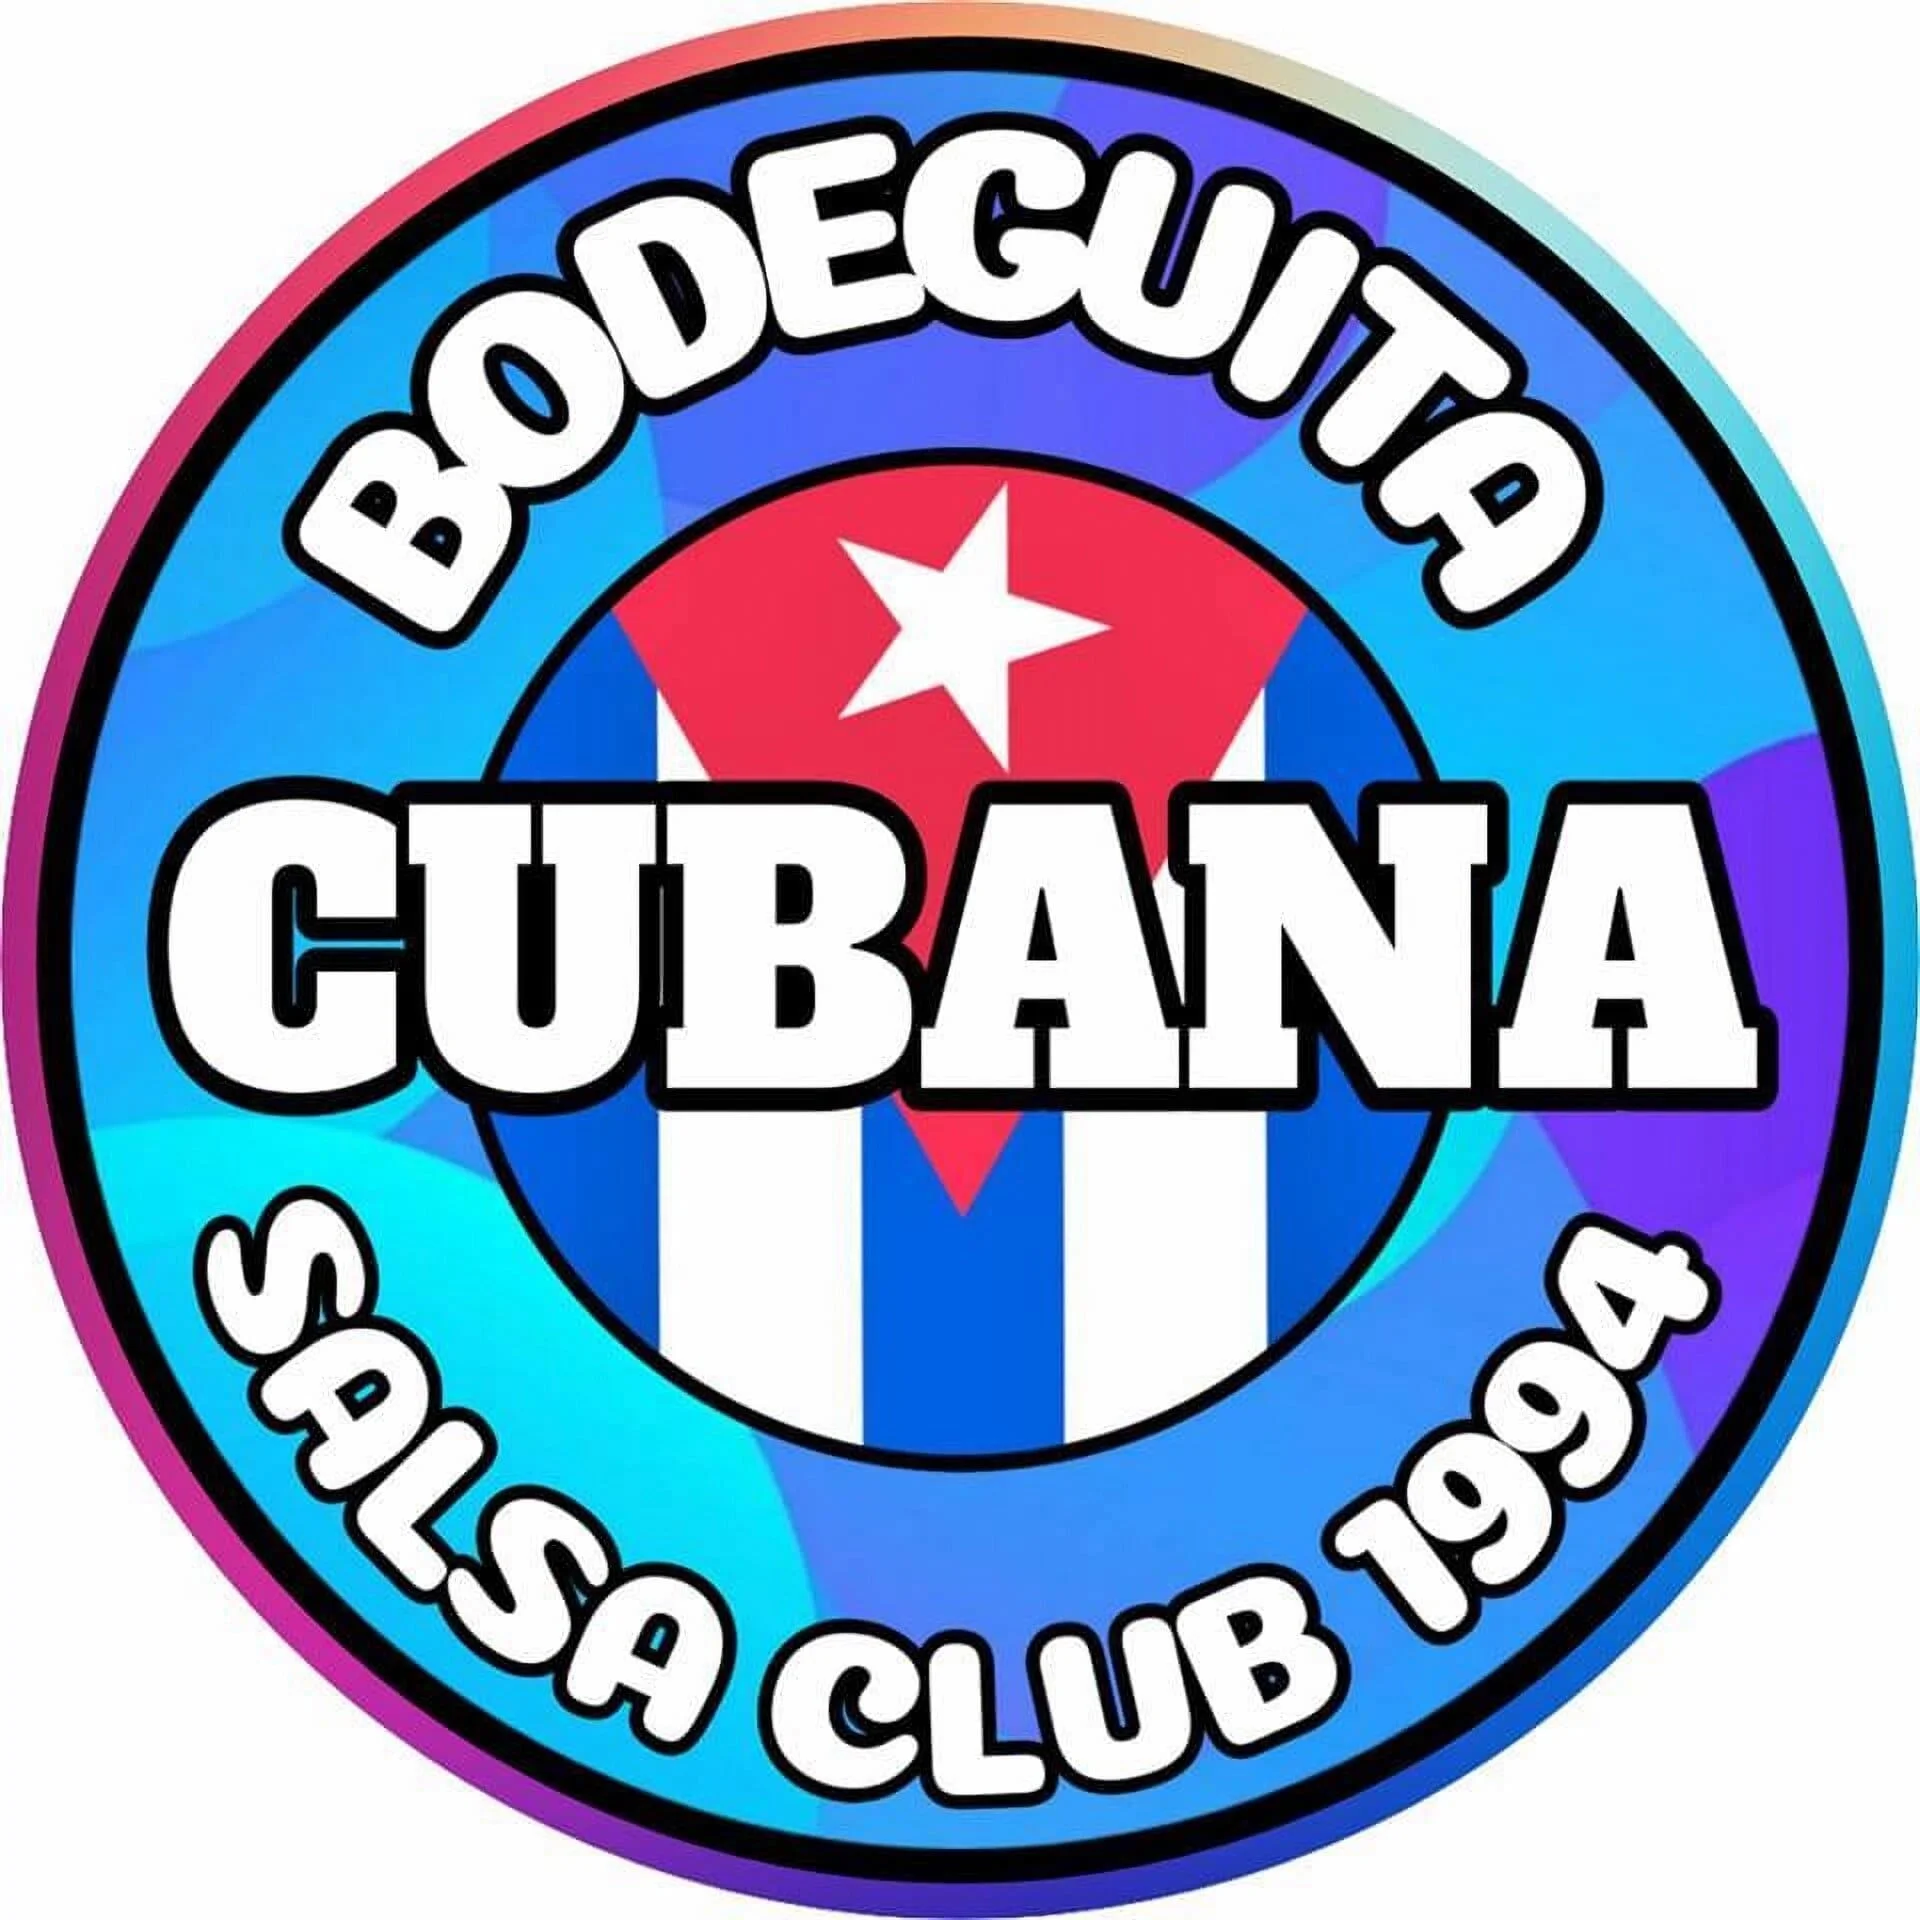 La Bodeguita Cubana Salsa Club-10364